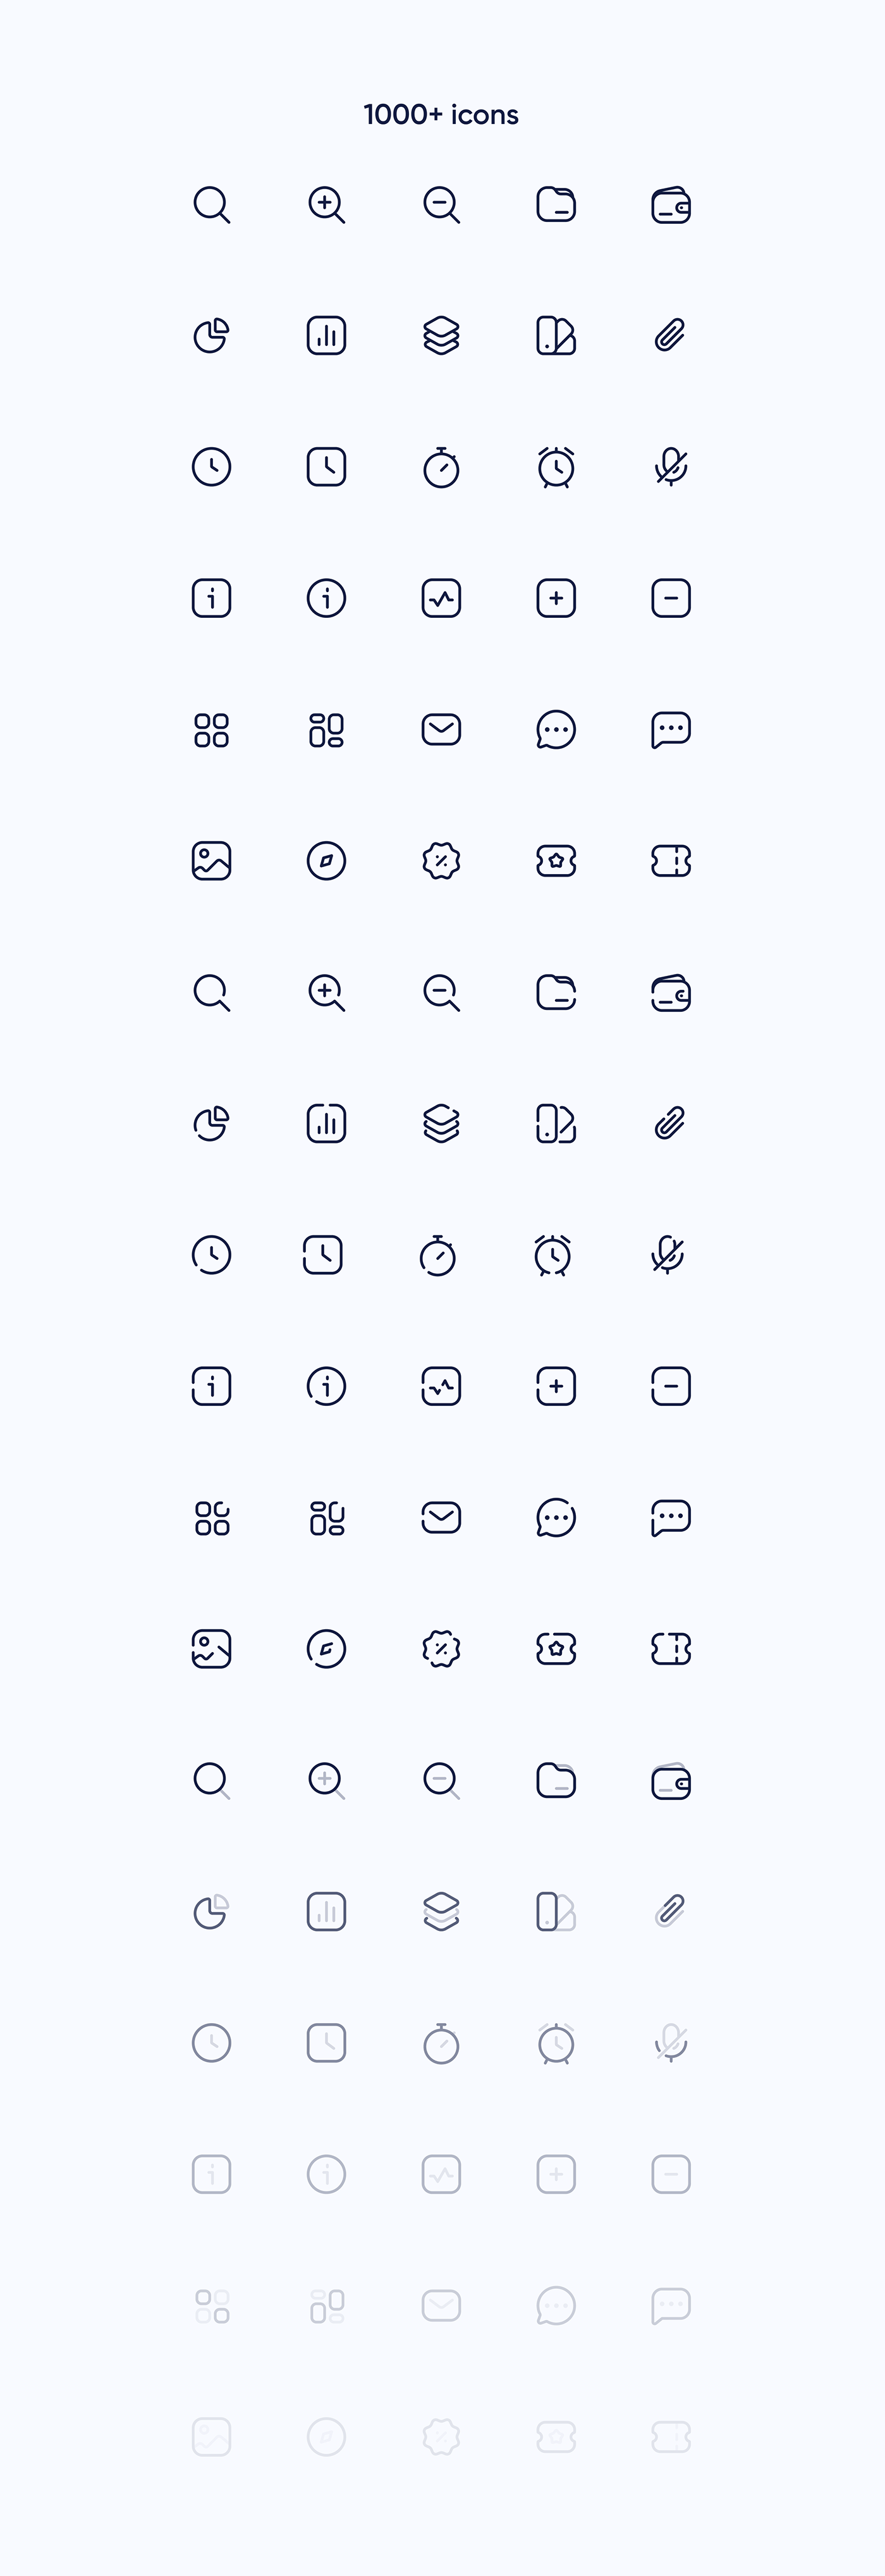 app Figma free freebie Icon icons portfolio presentation icon pack icon set